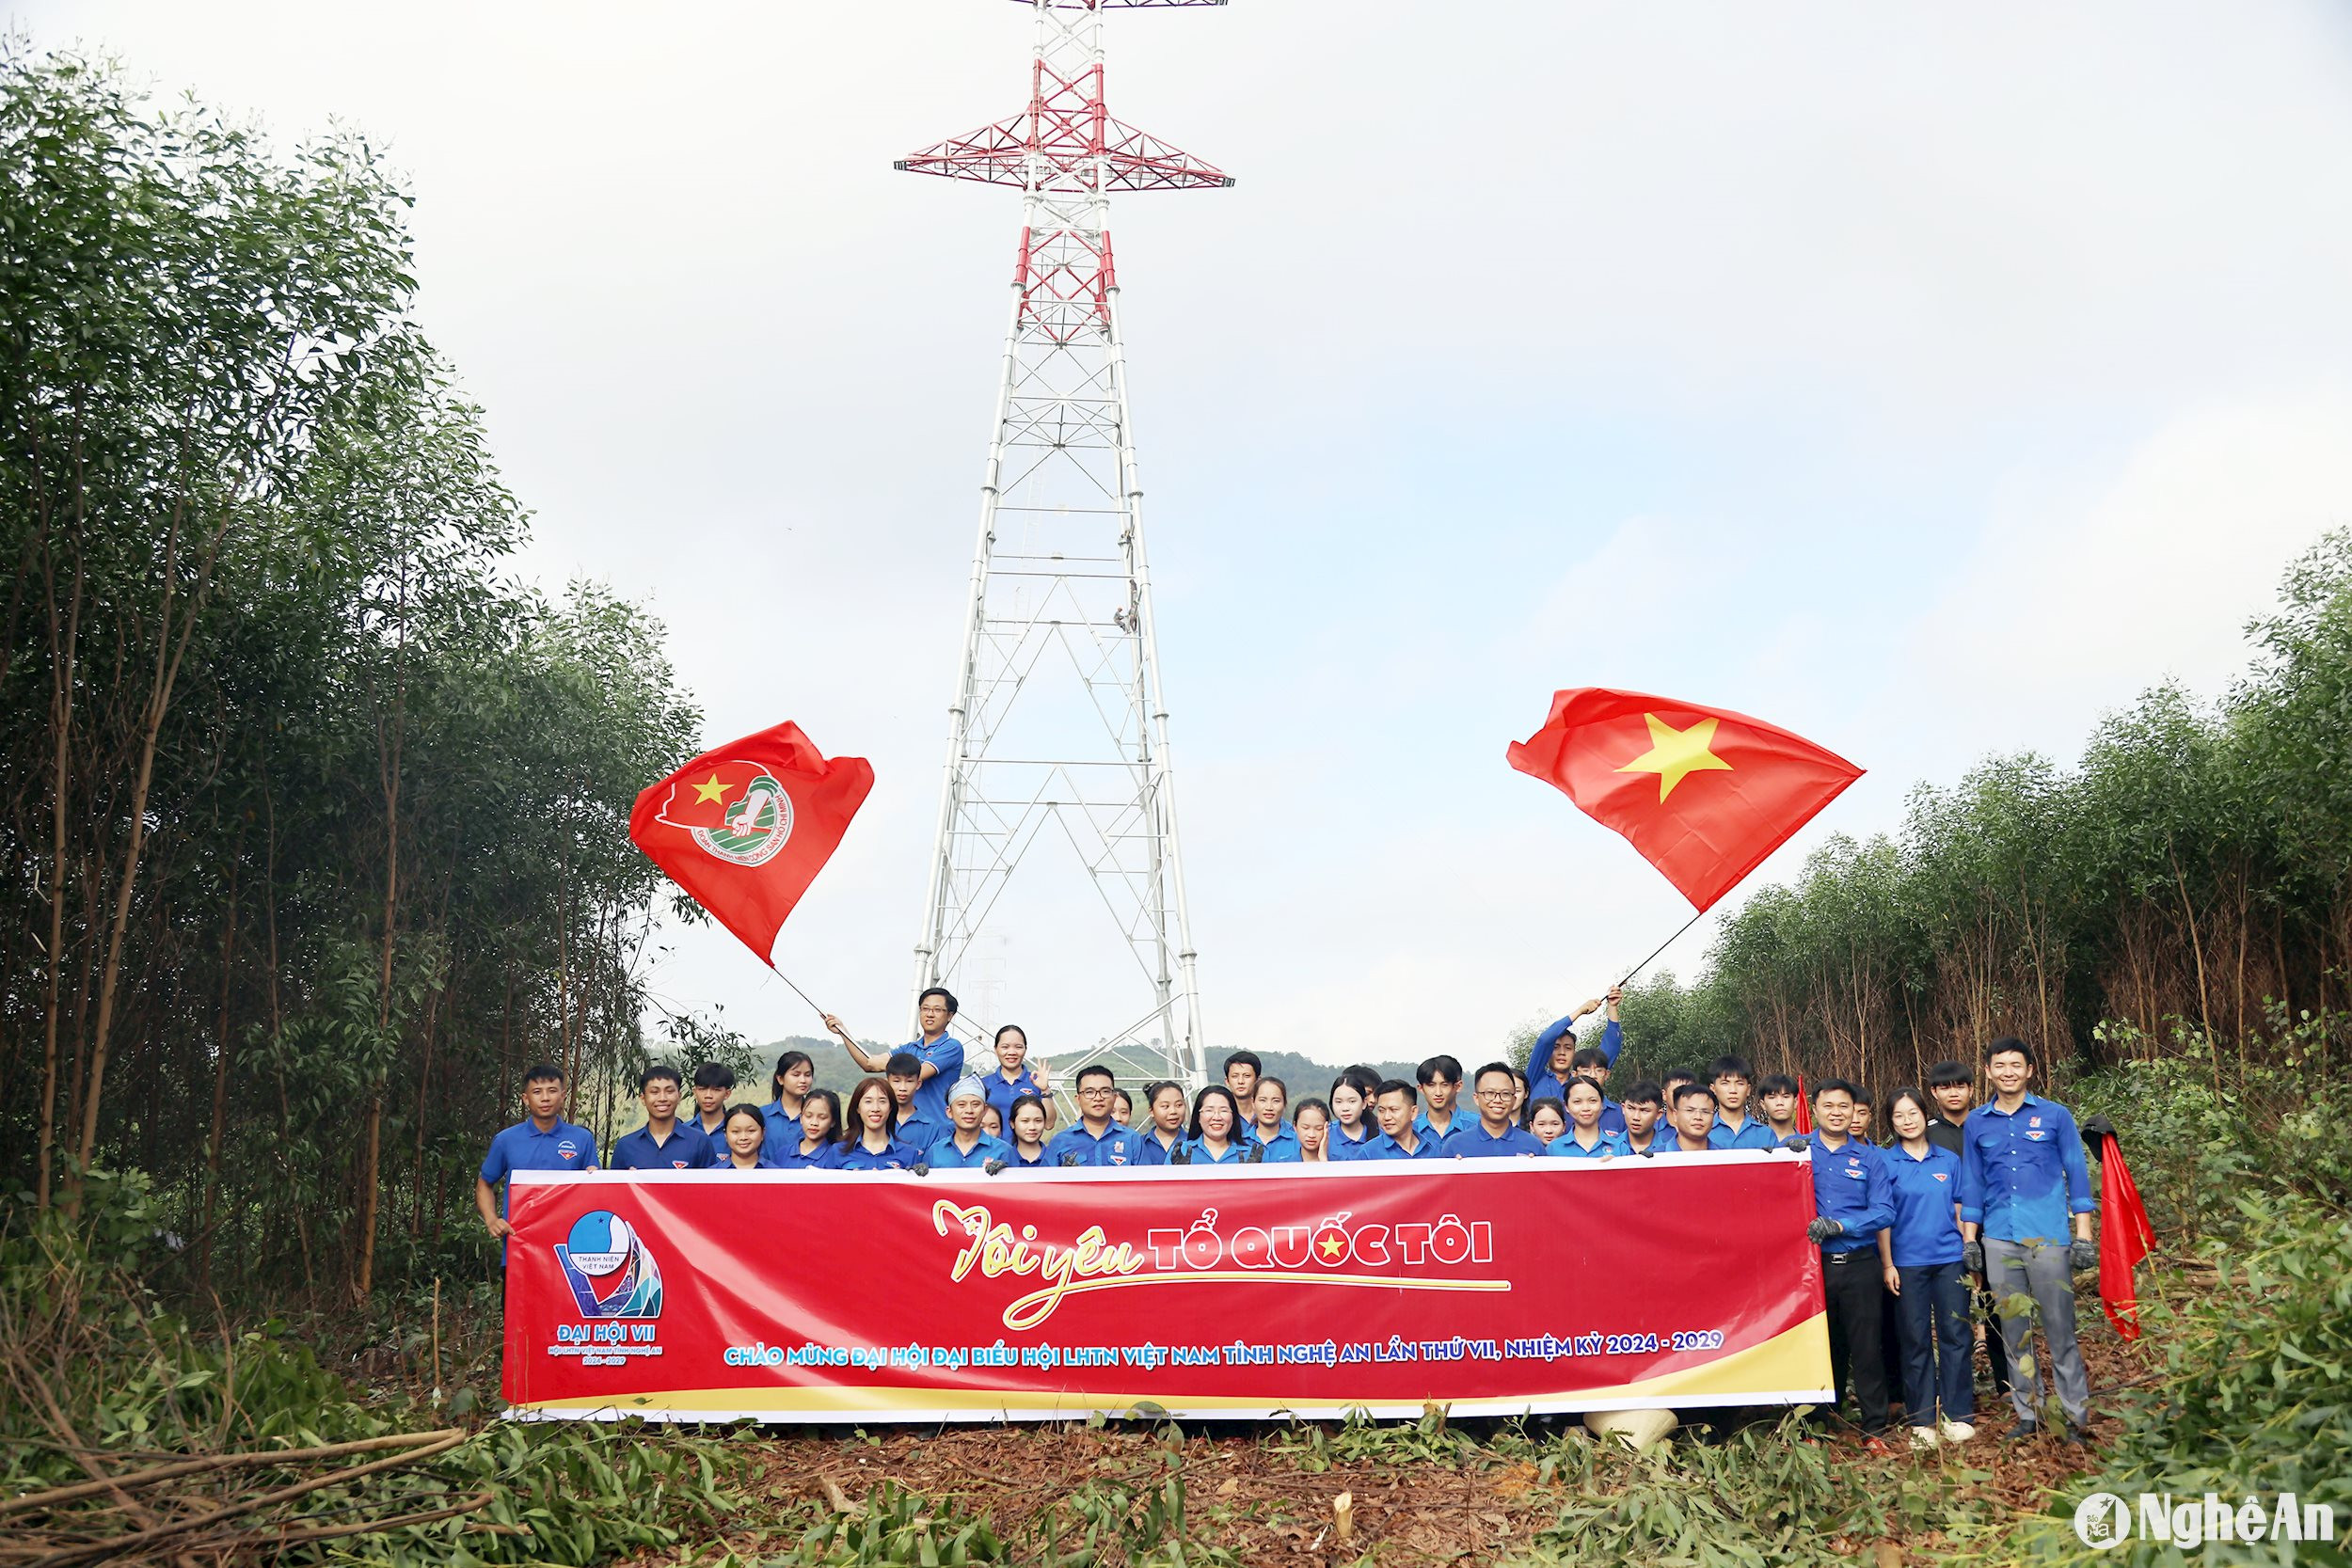 Tuổi trẻ Nghệ An cán đích thành công 30 ngày thi đua cao điểm hỗ trợ dự án đường dây 500kV mạch 3. Ảnh: Thanh Quỳnh